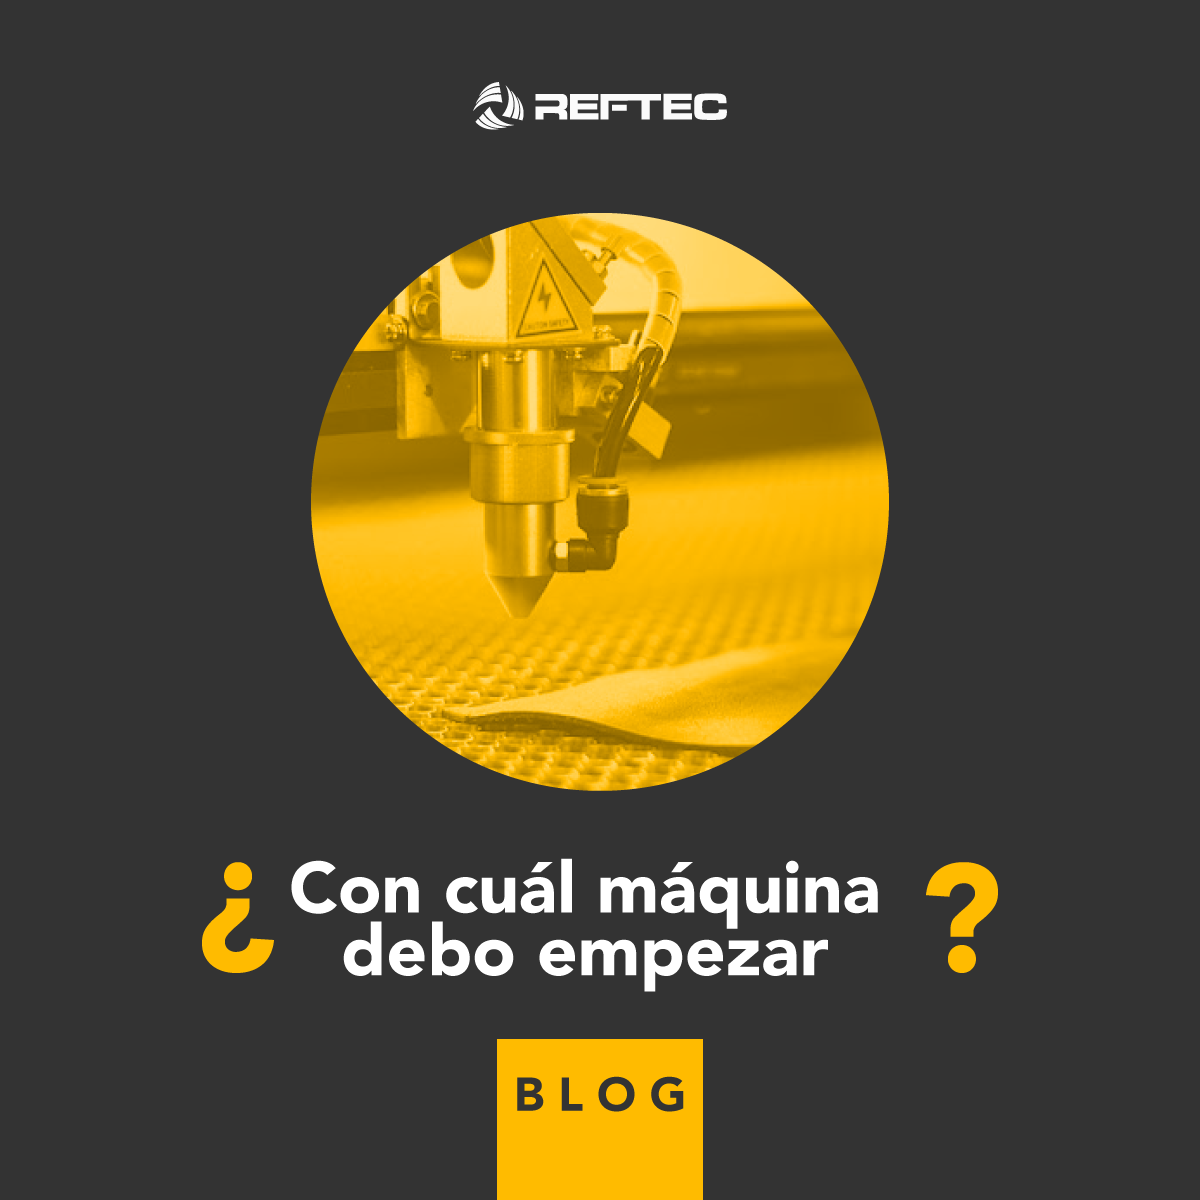 Featured image for “¿Con cuál máquina debo empezar?”